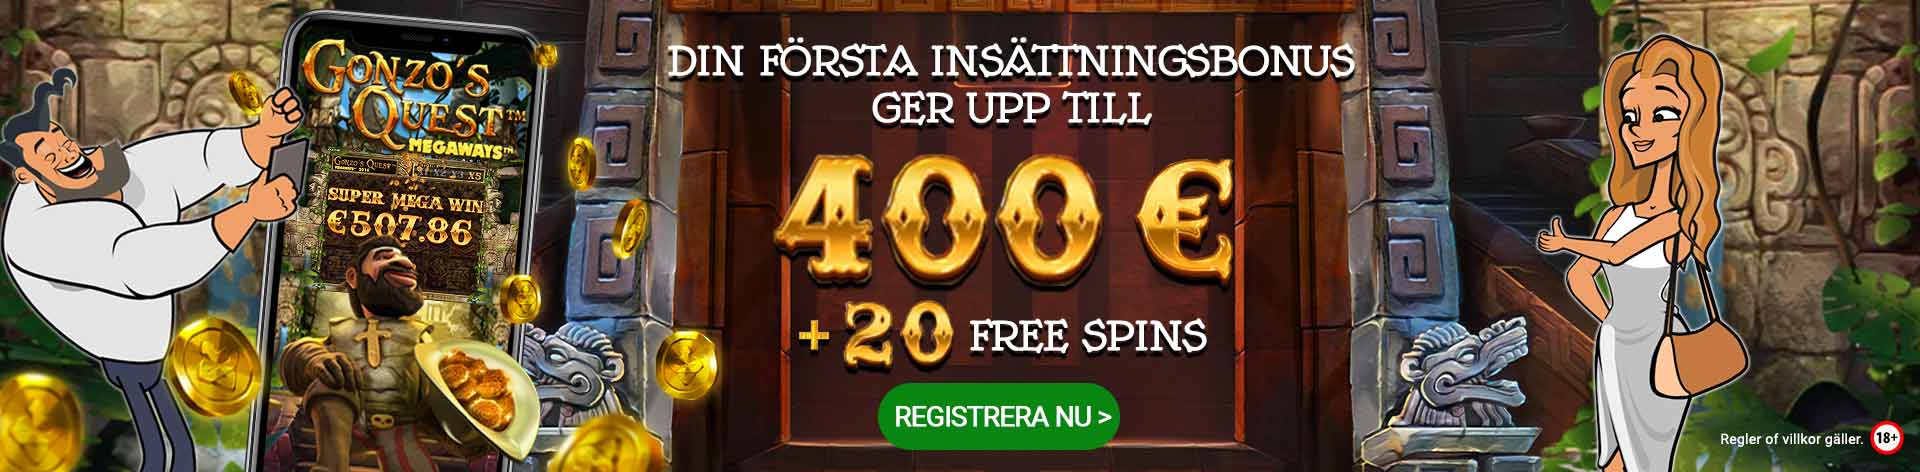 Din första insättningsbonus ger upp till 400 € + 20 Free Spins. Registrera nu!